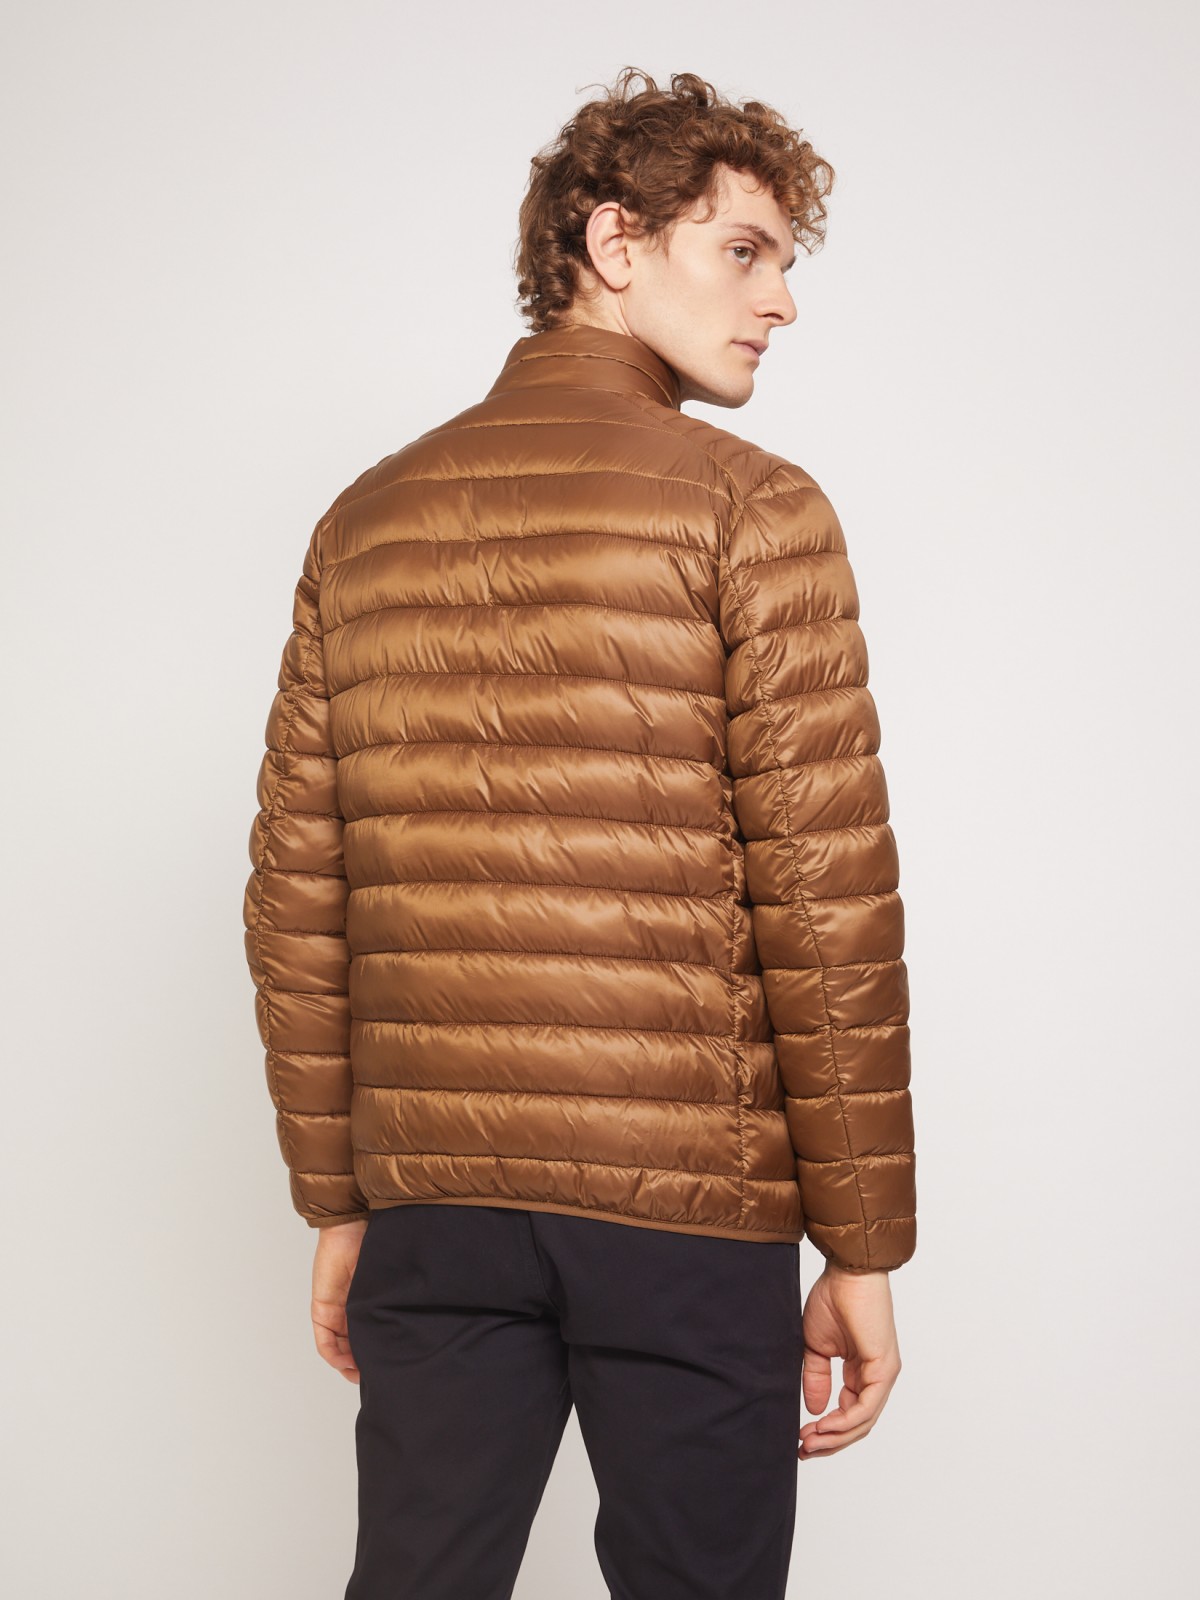 Ультралёгкая стёганая куртка с воротником-стойкой zolla 011335102214, цвет горчичный, размер S - фото 6